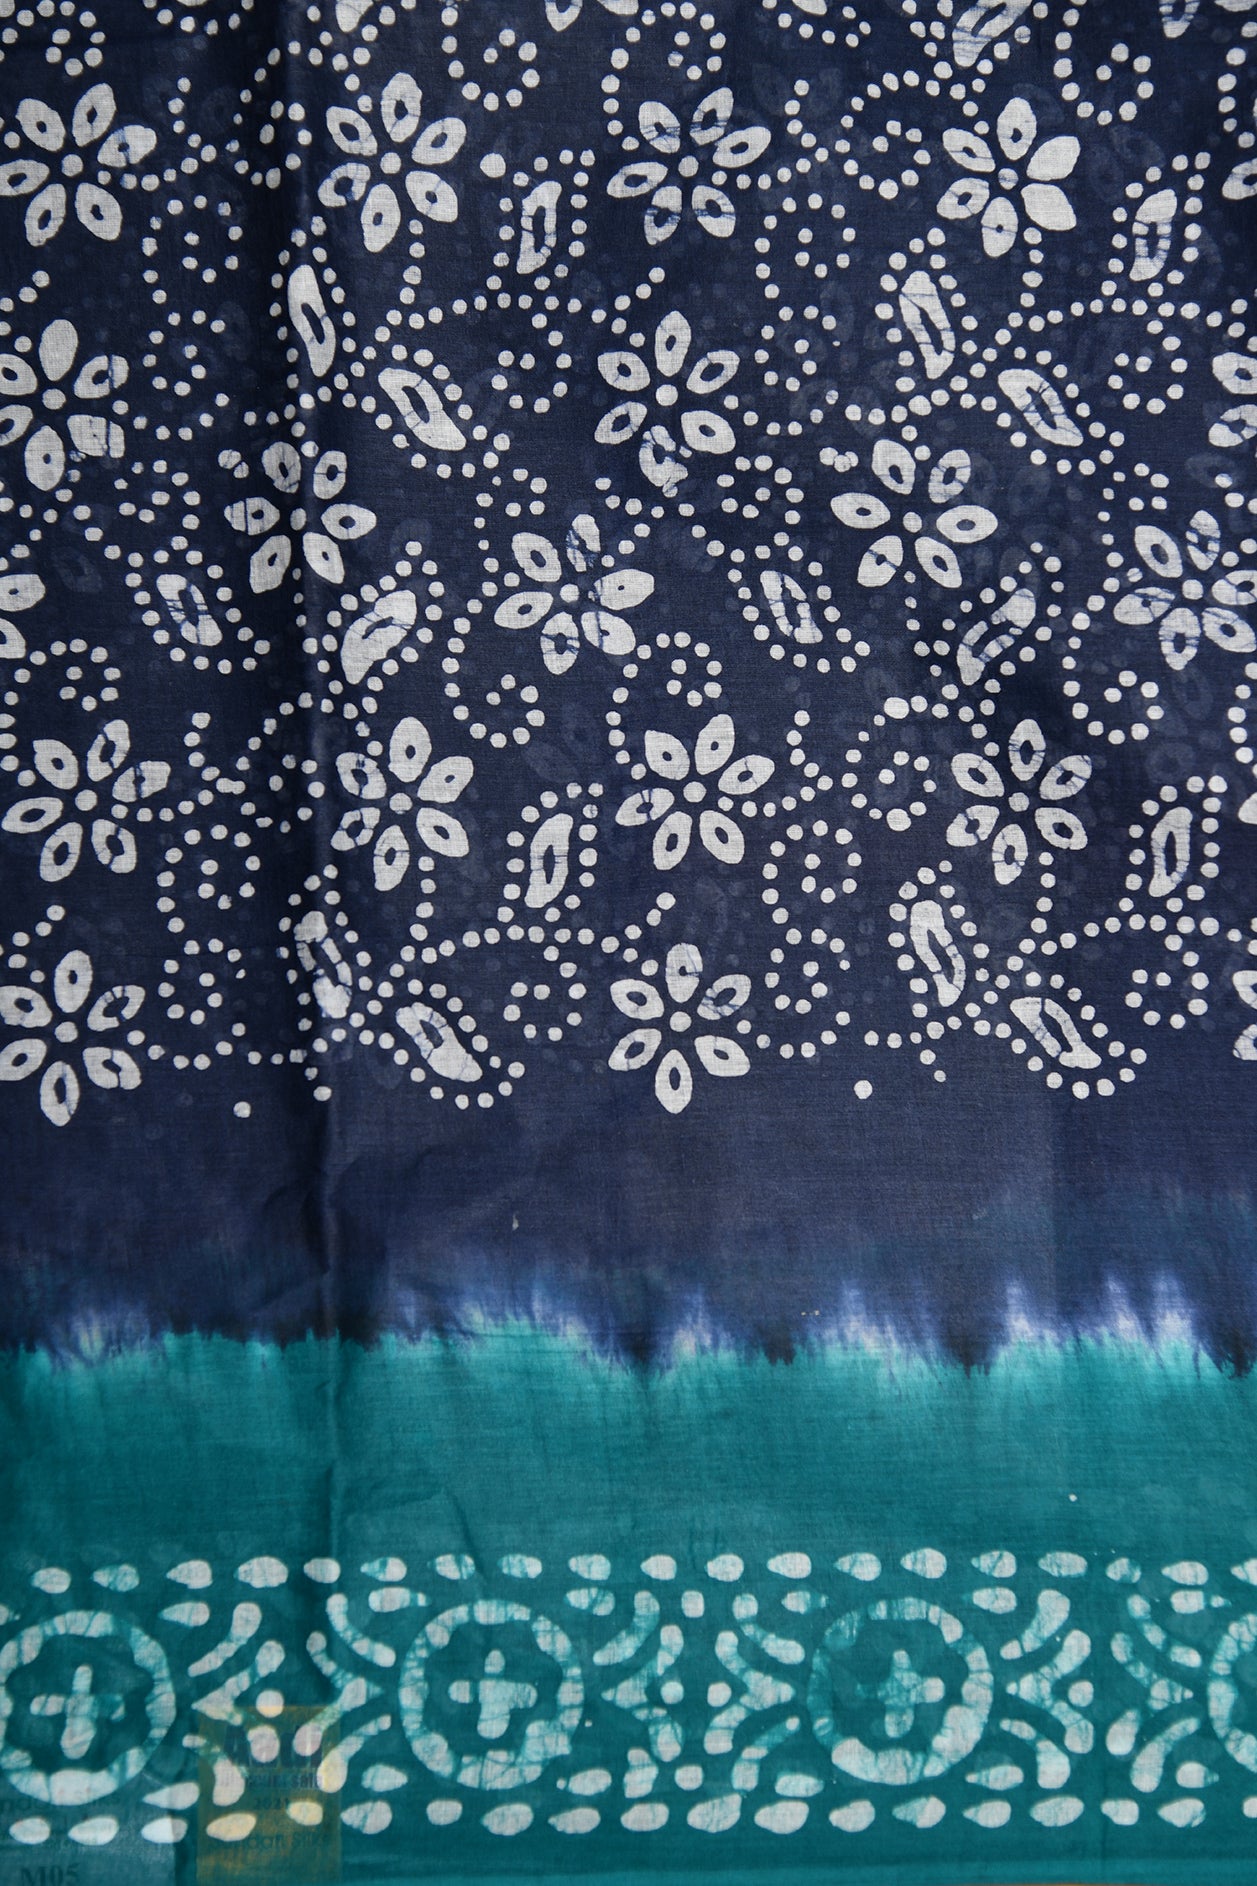 Batik Floral Printed Indigo Blue Hyderabad Cotton Saree